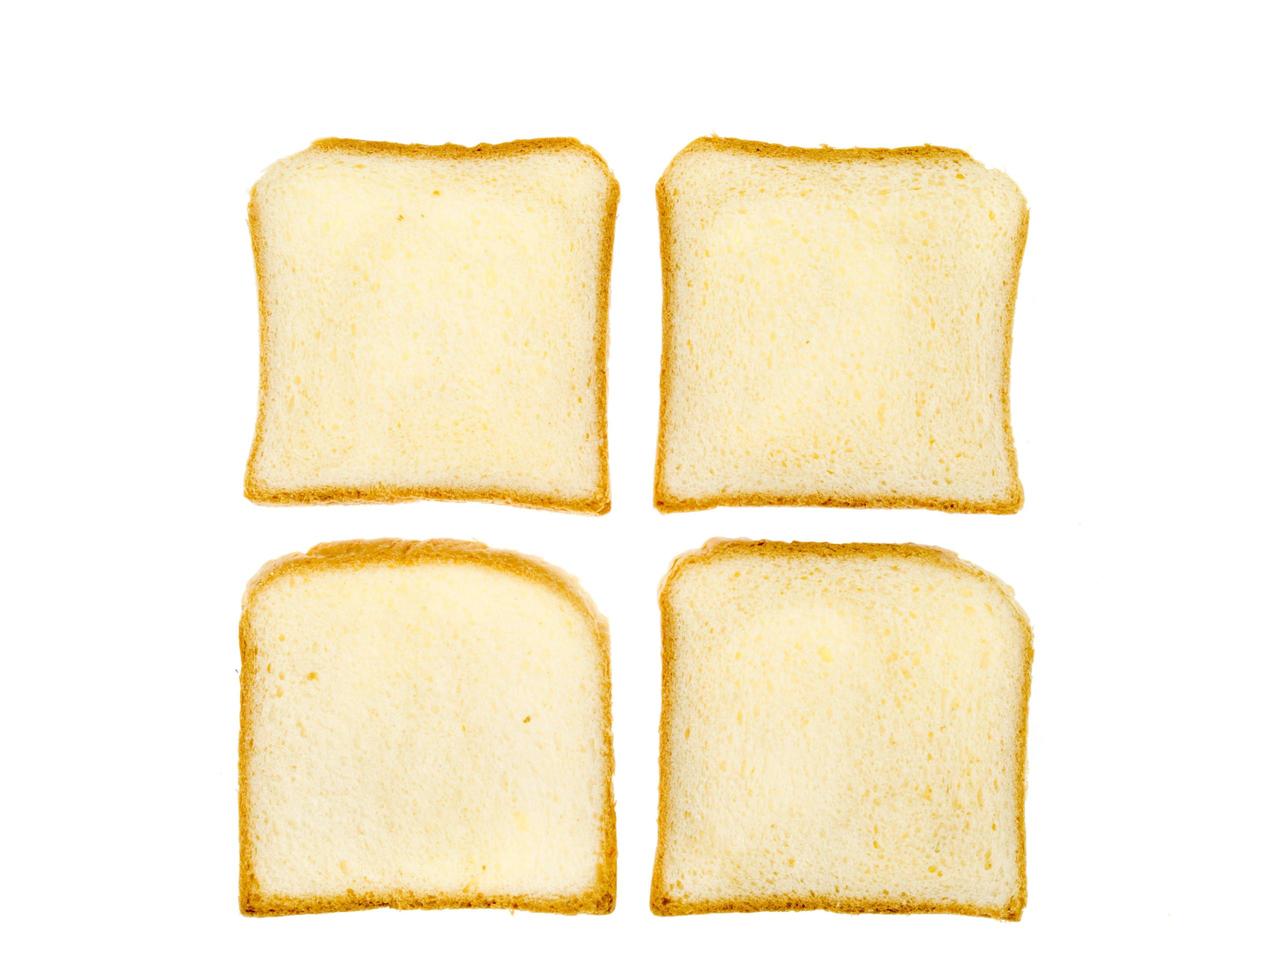 morceaux de pain de blé grillé carré isolé sur fond blanc. photo